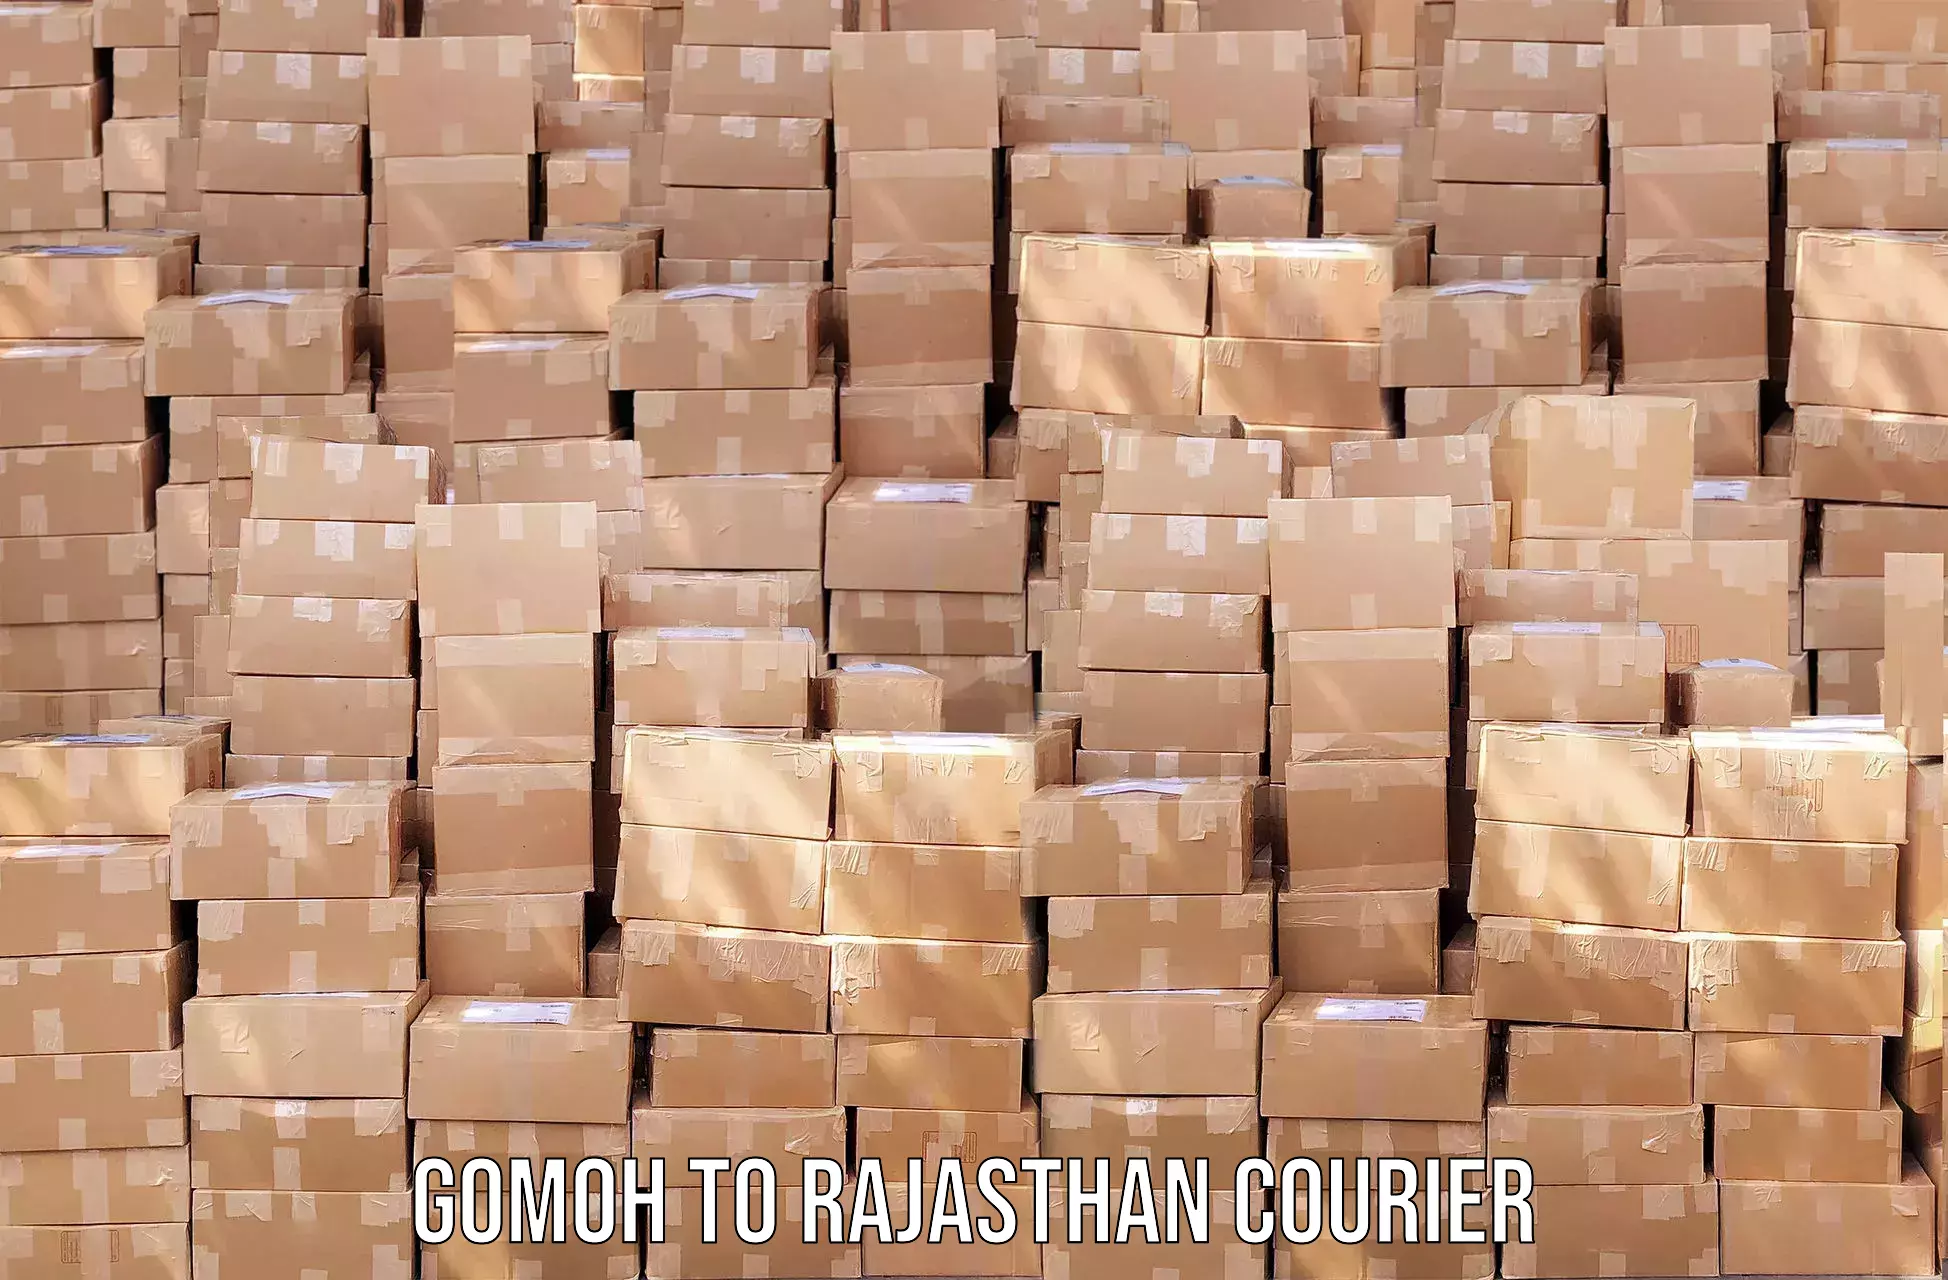 Courier service comparison Gomoh to Nokha